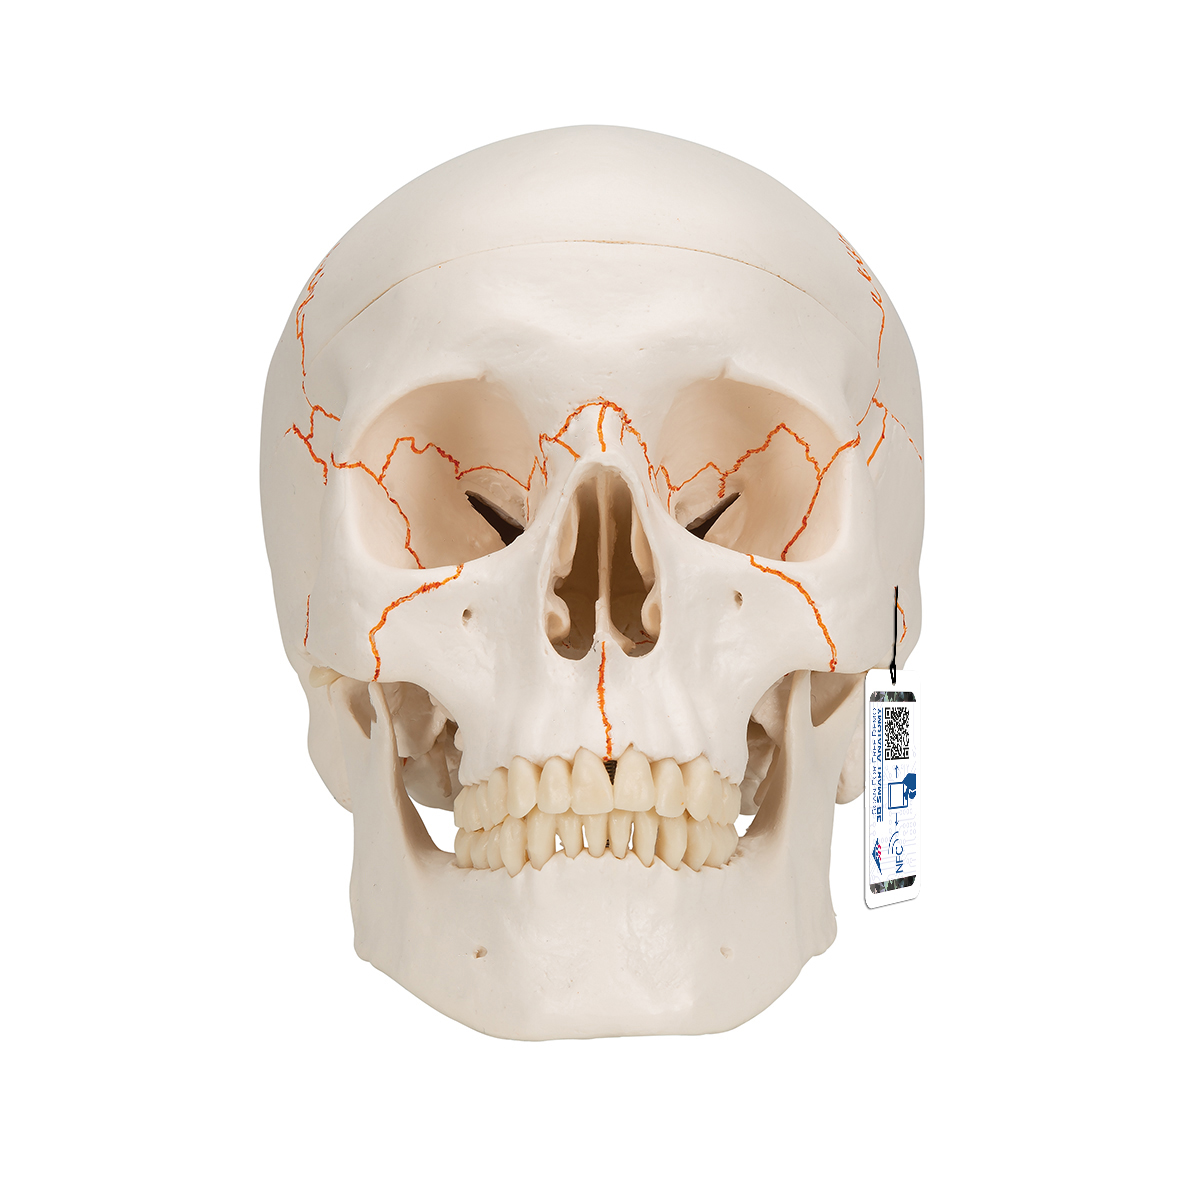 经典头颅模型（带编号），3部分- 3B Smart Anatomy - 1020165 - A21 - 头颅模型- 3B Scientific